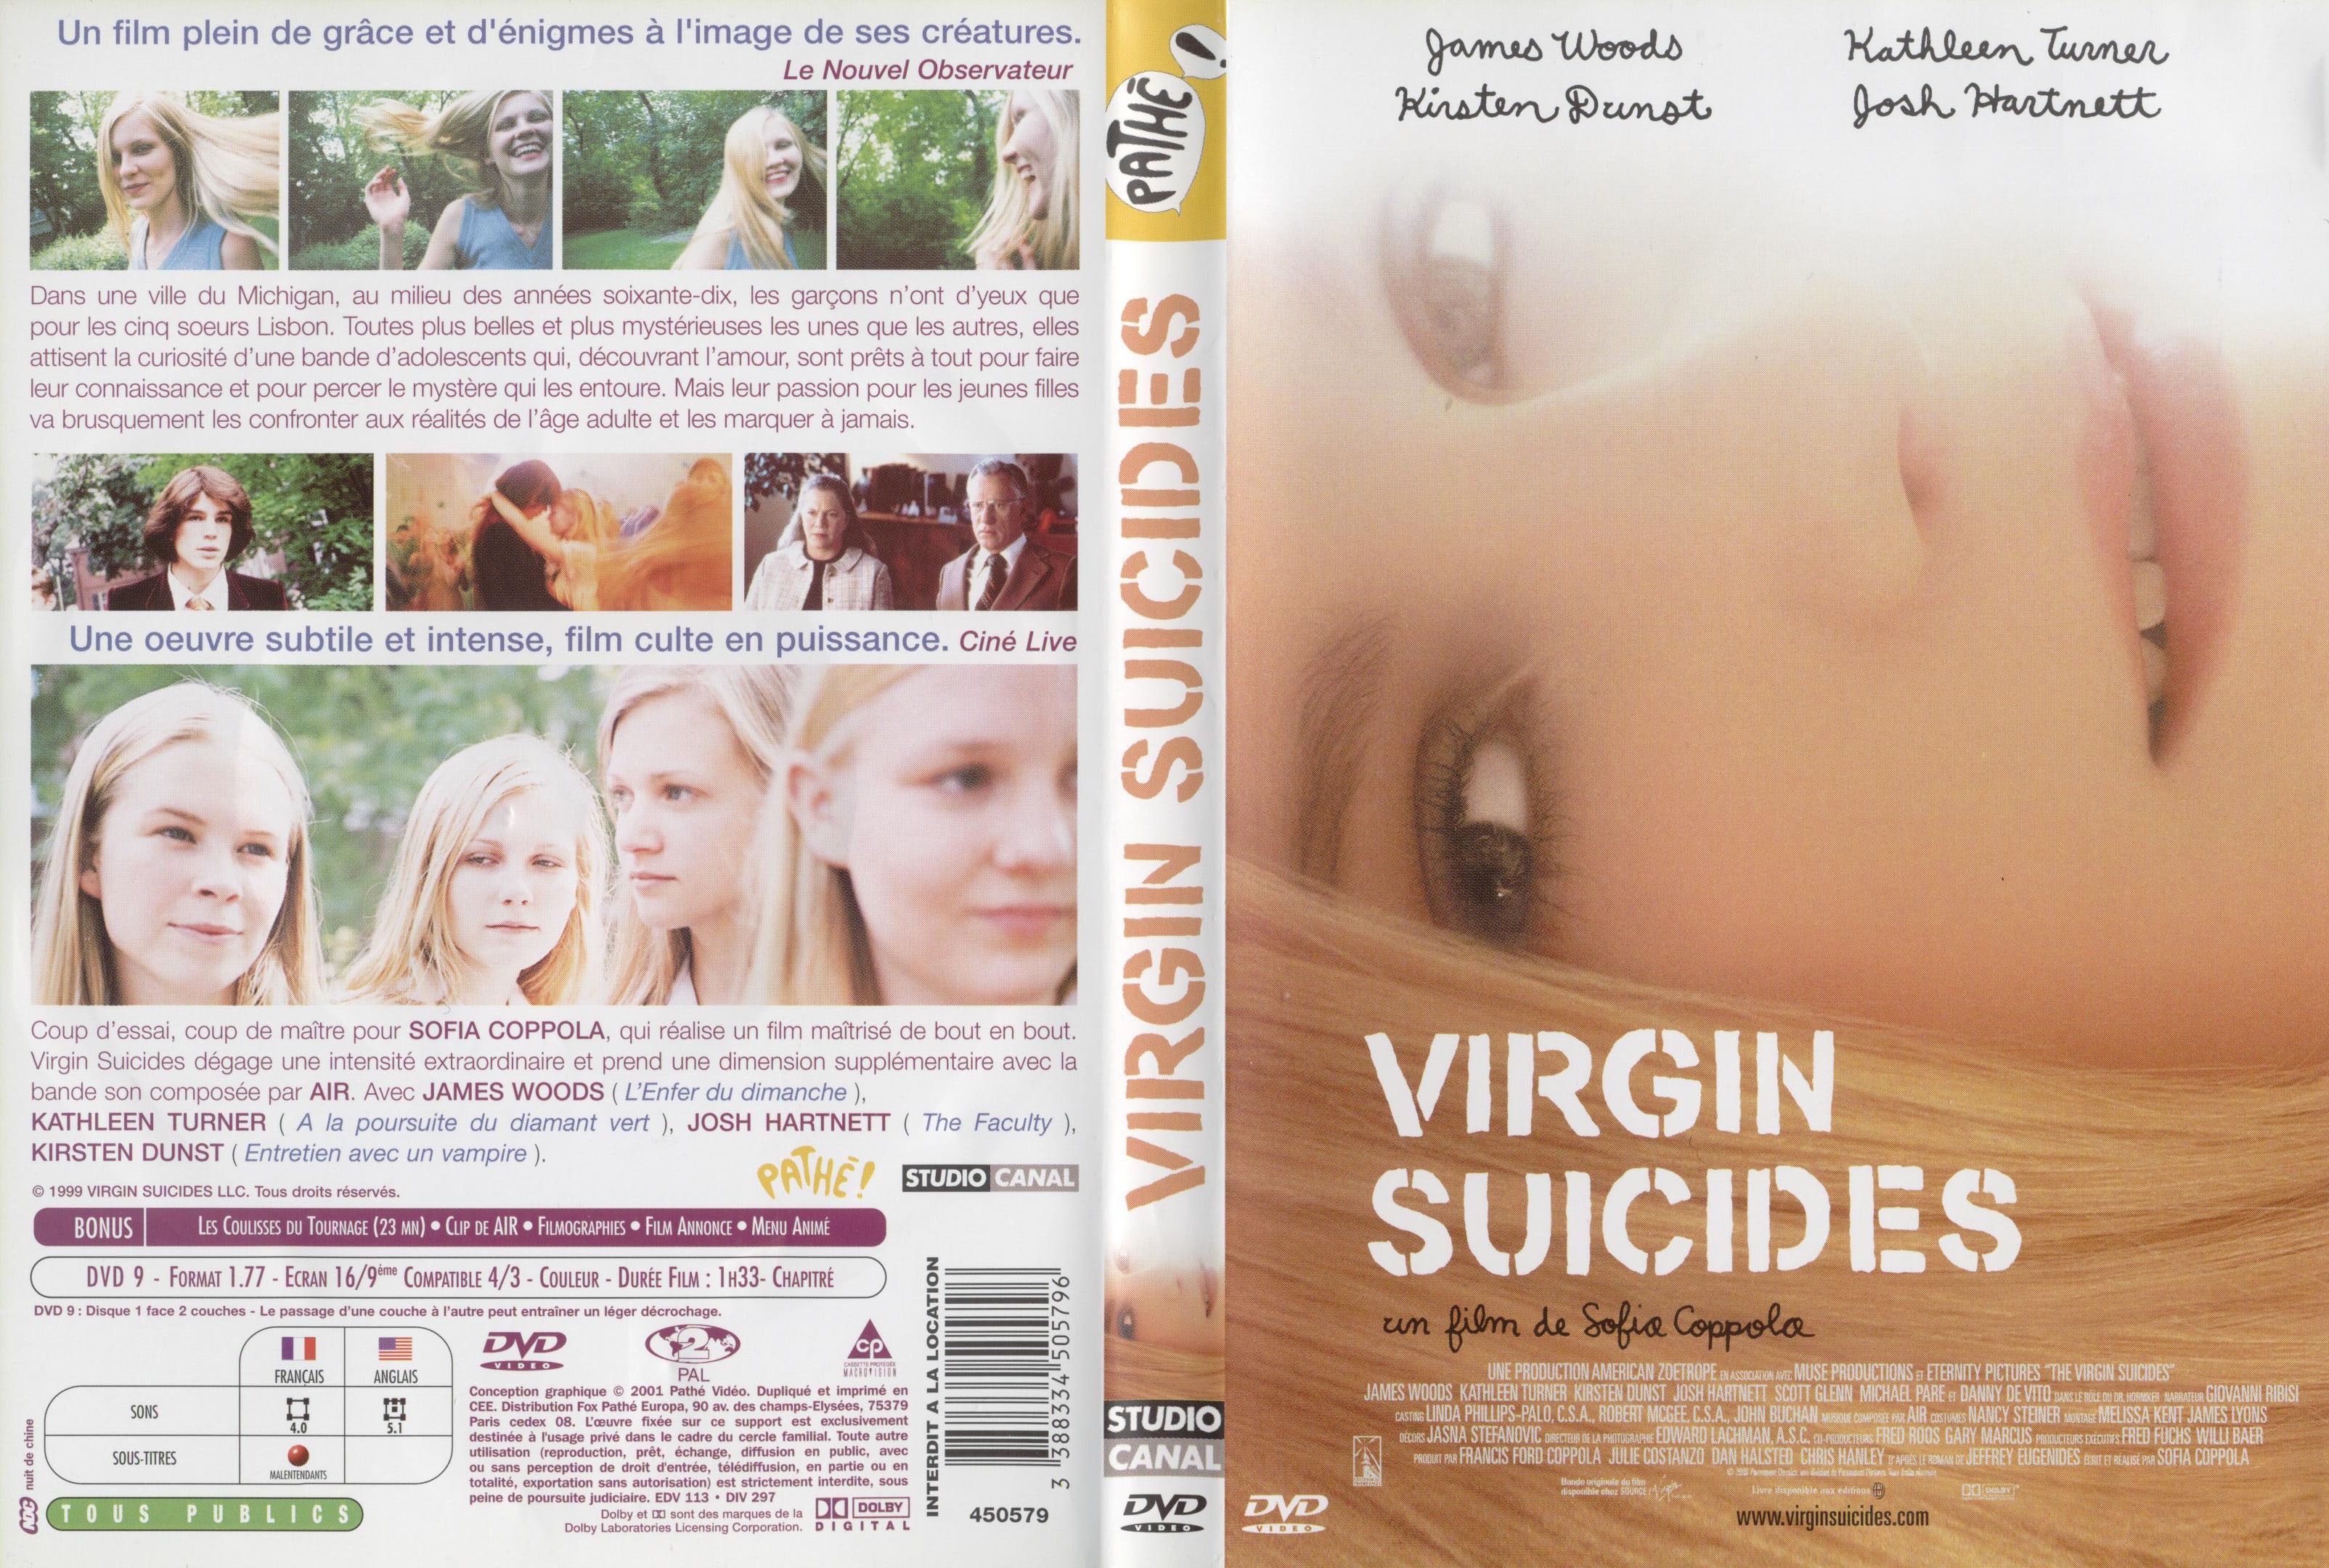 Jaquette DVD Virgin suicides